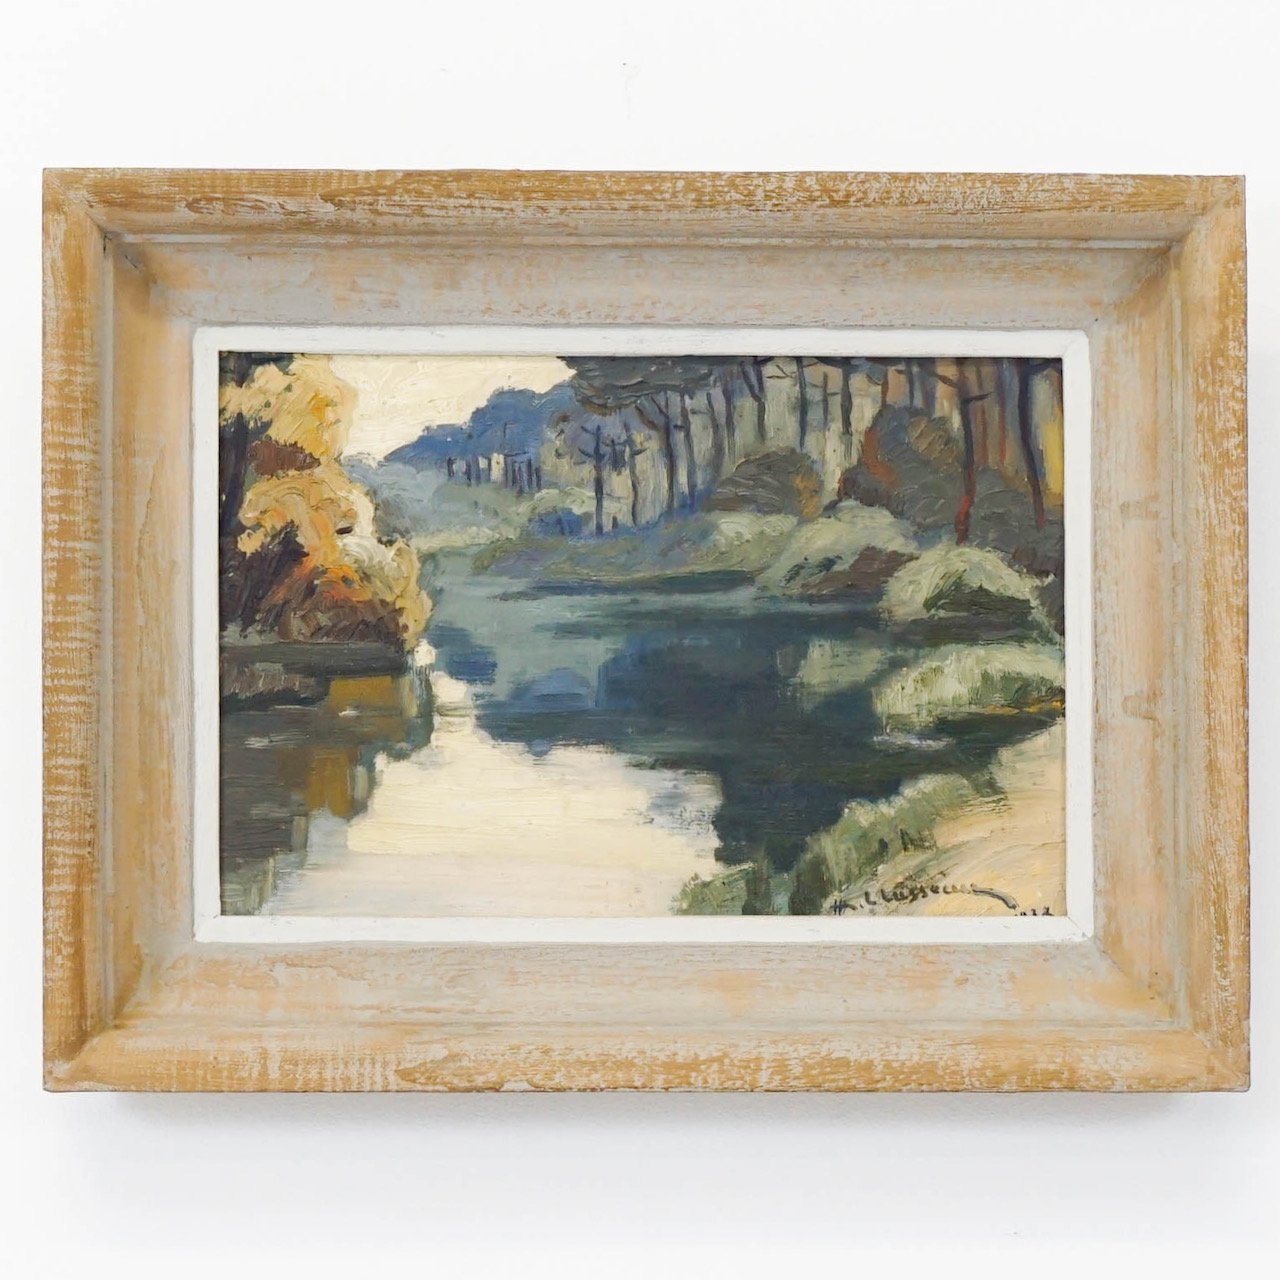 River Scene by H L Lusseau